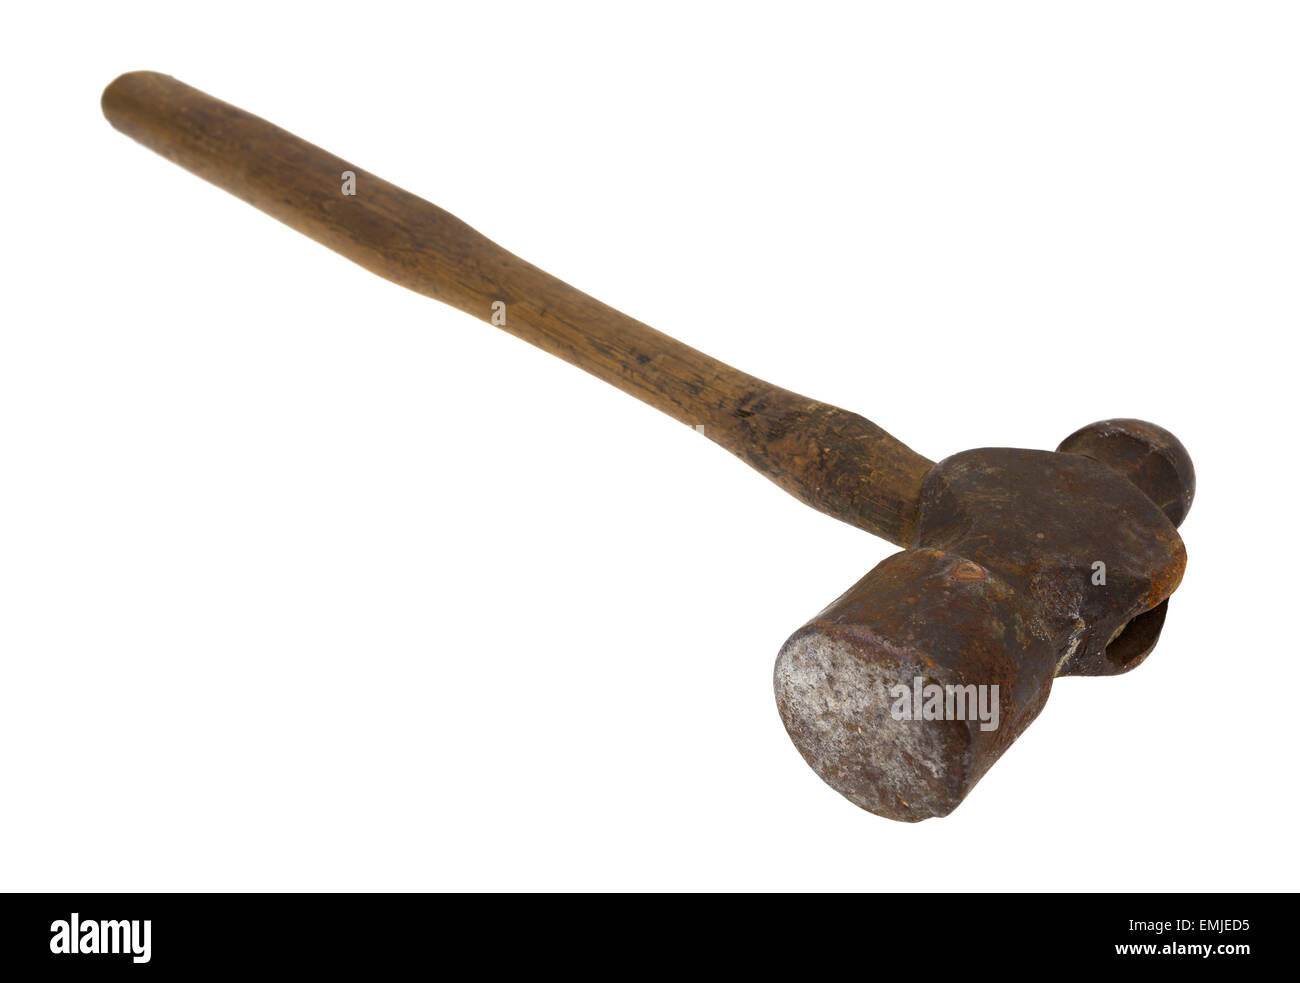 Eine alte antike Ball – Peen Hammer auf einem weißen Hintergrund. Stockfoto